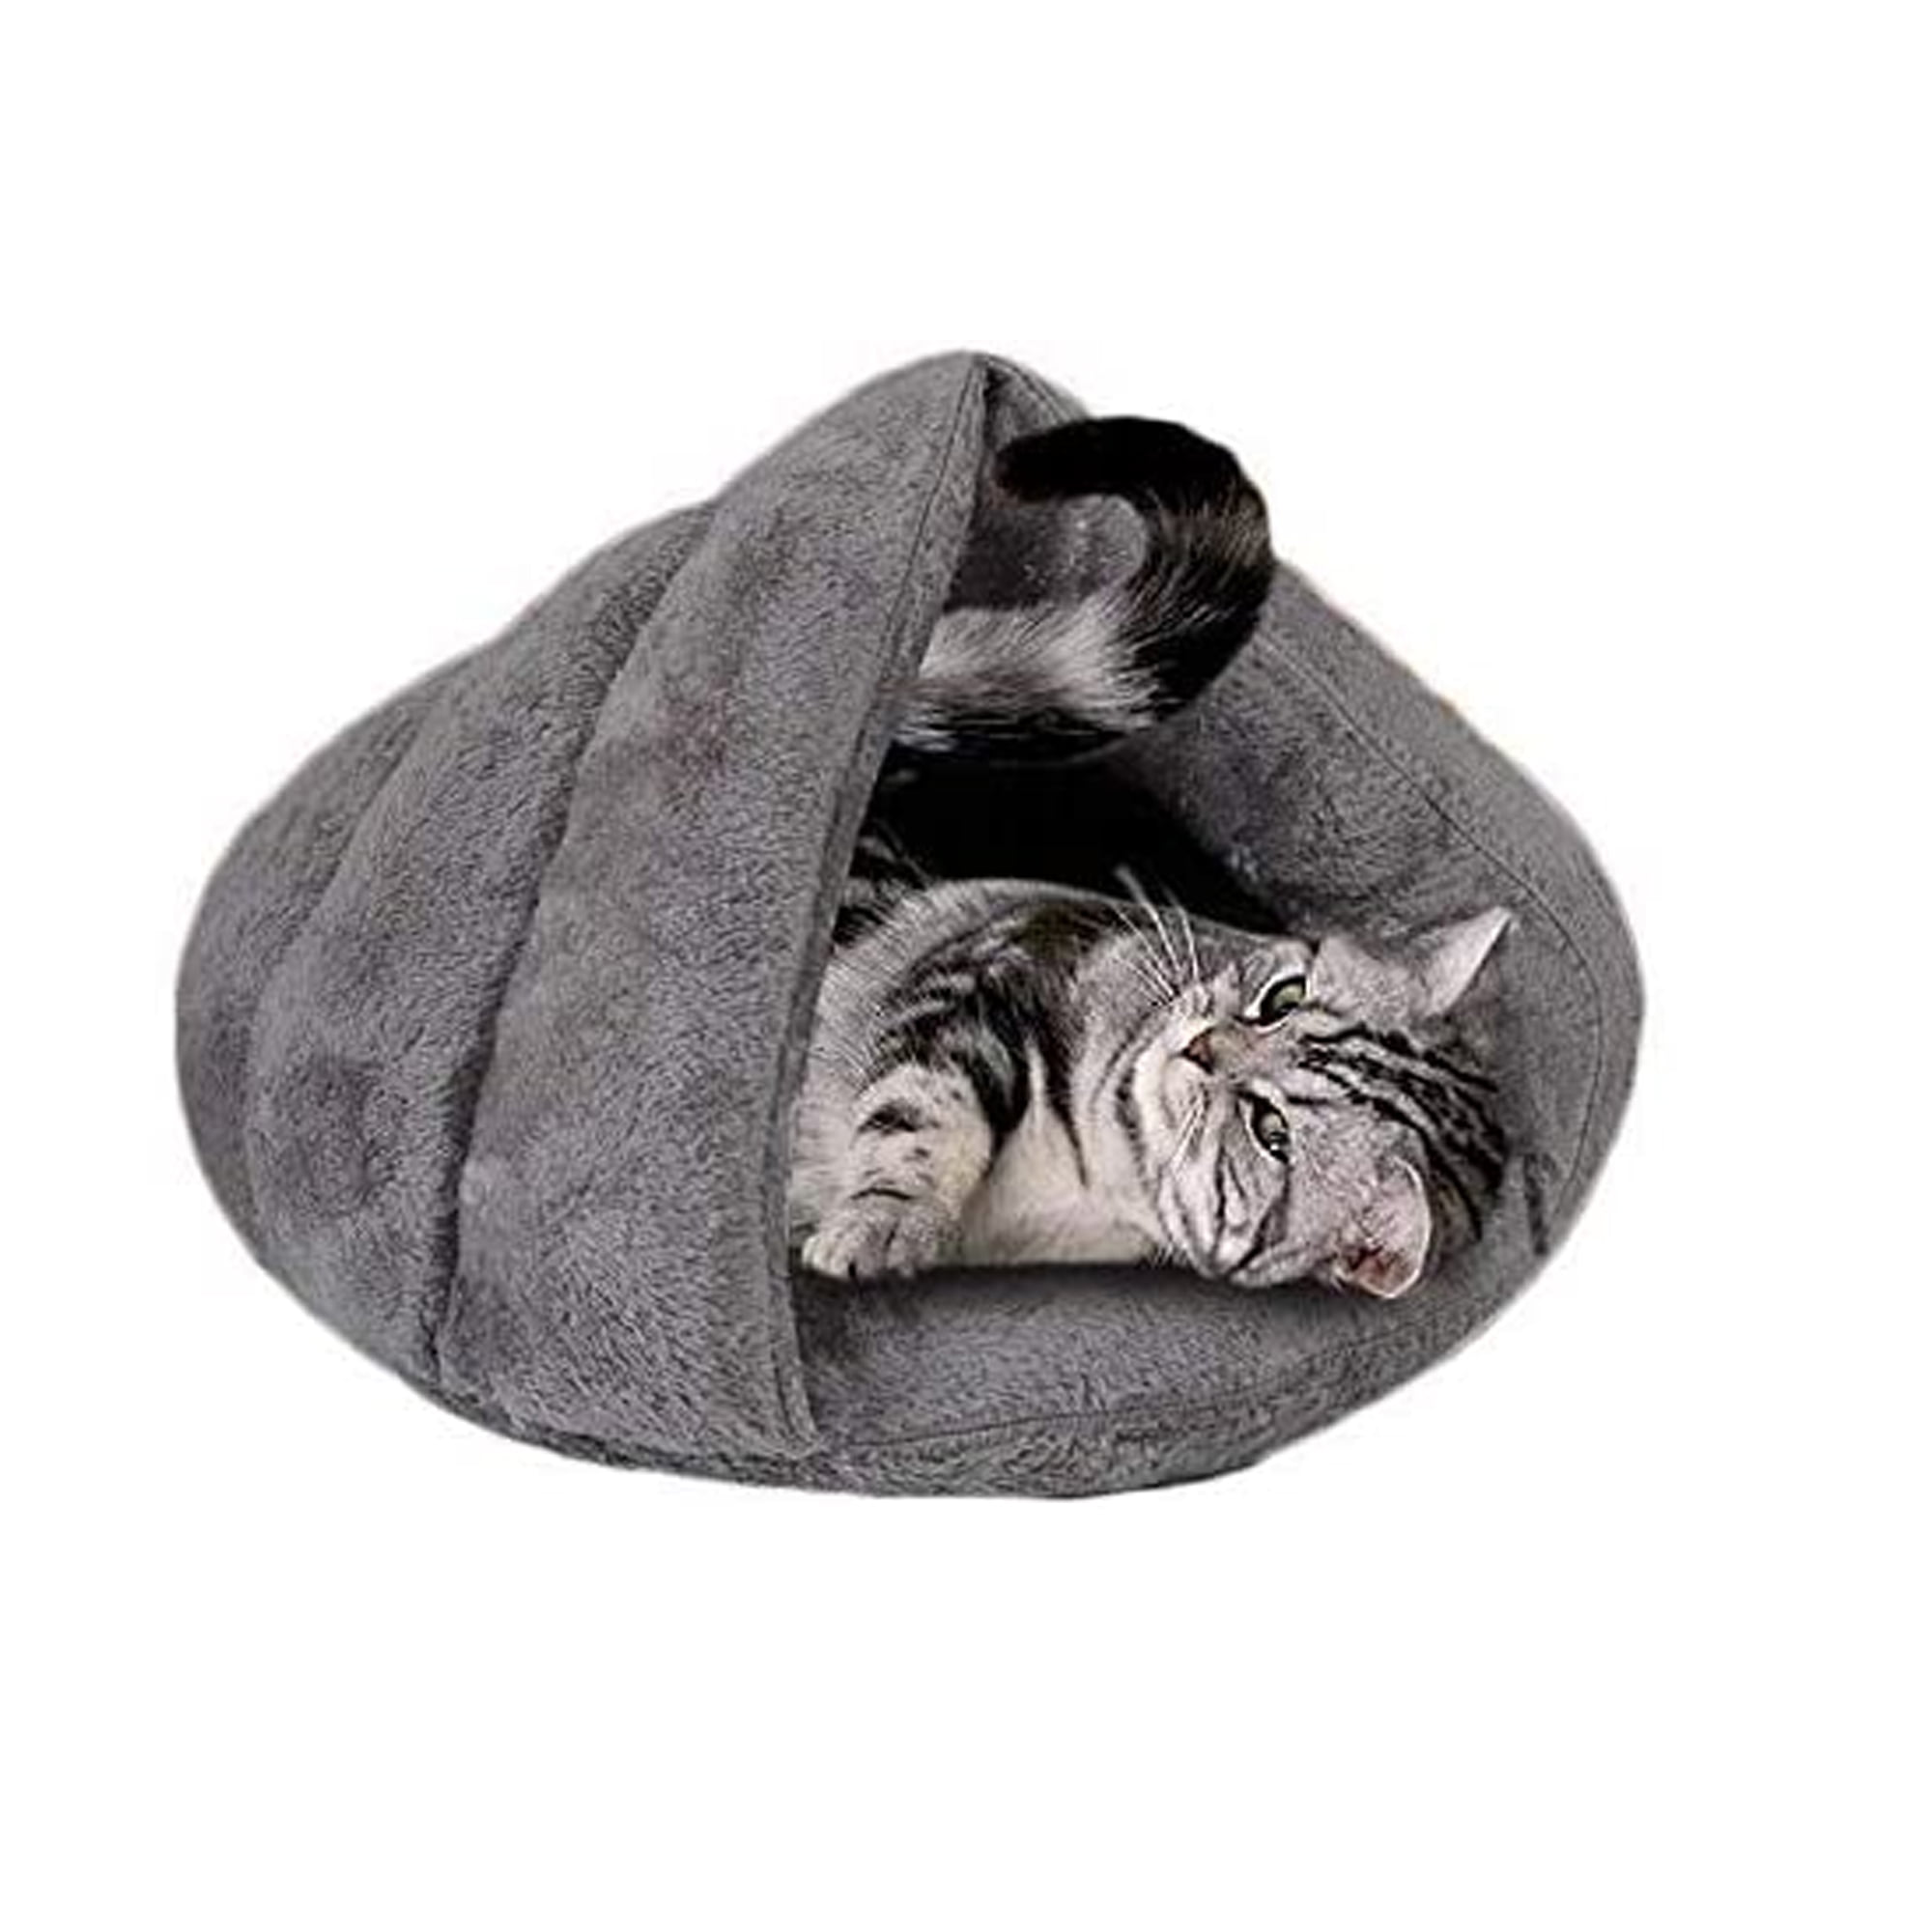 Comfortable Soft Cotton Pet Dogs Cat Winter House Washable Slipper Pet Nest L Gray 